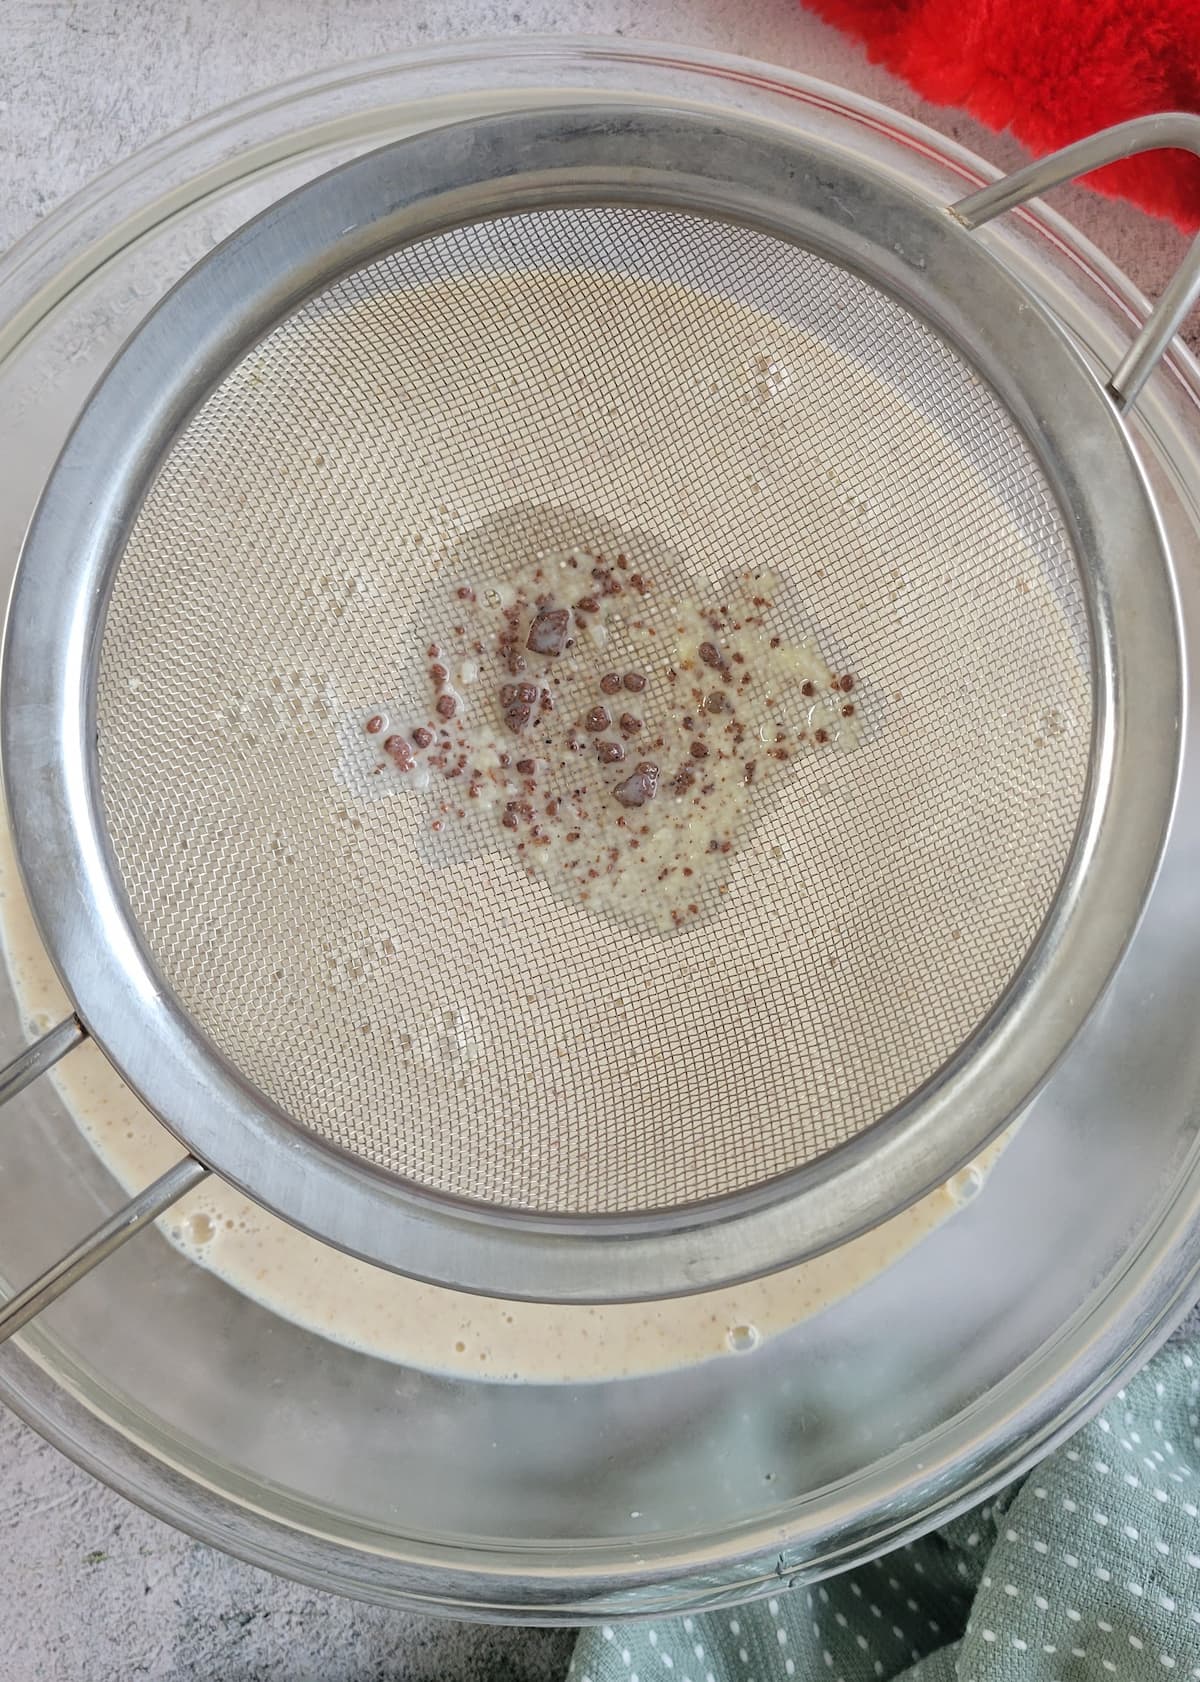 fine mesh strainer straining homemade eggnog into a bowl